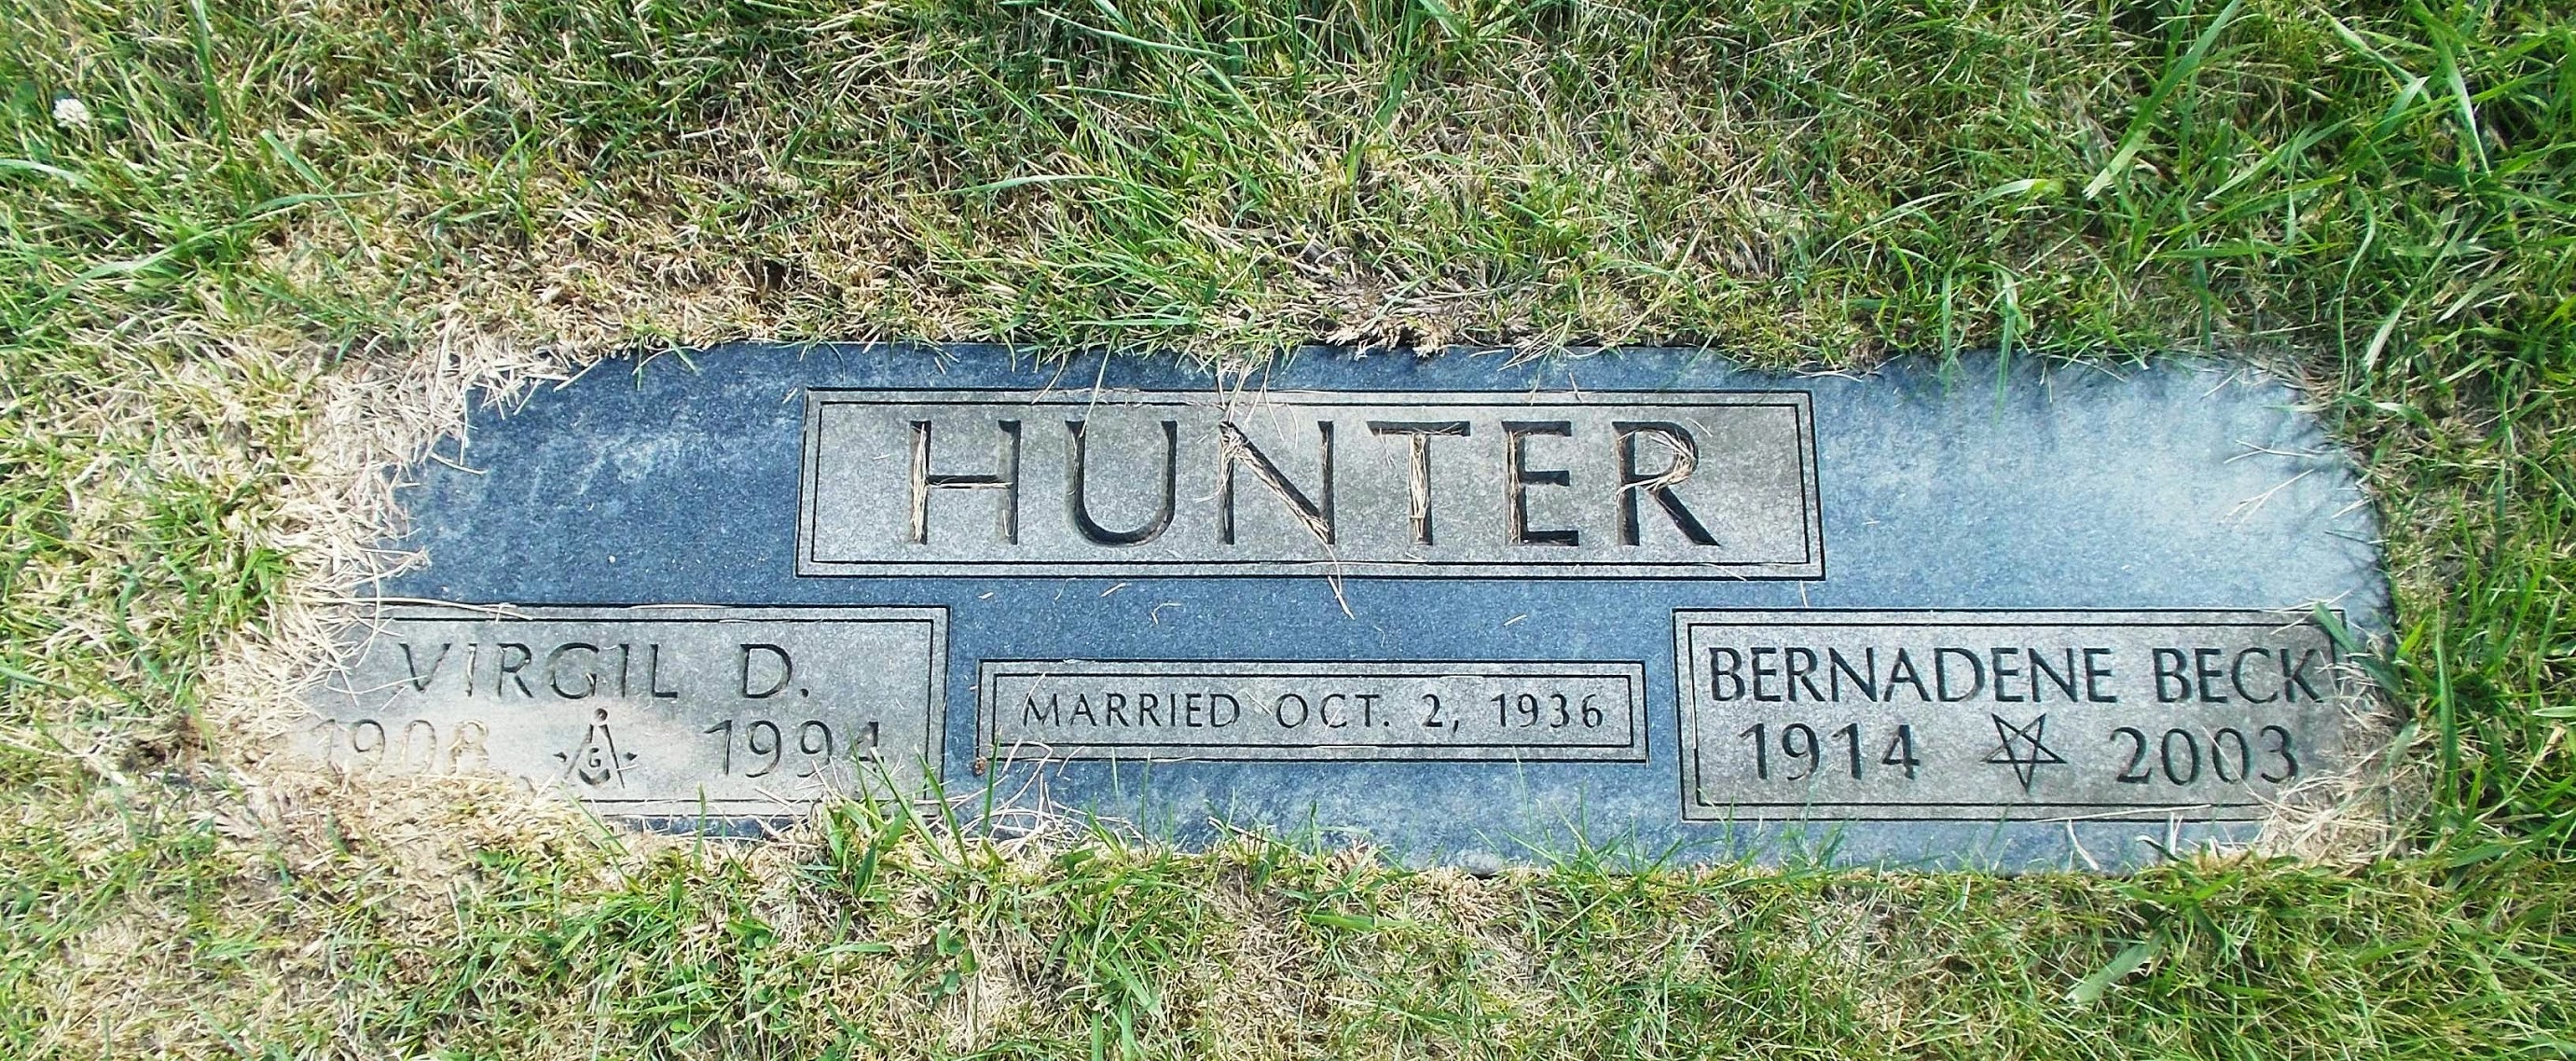 Virgil D Hunter